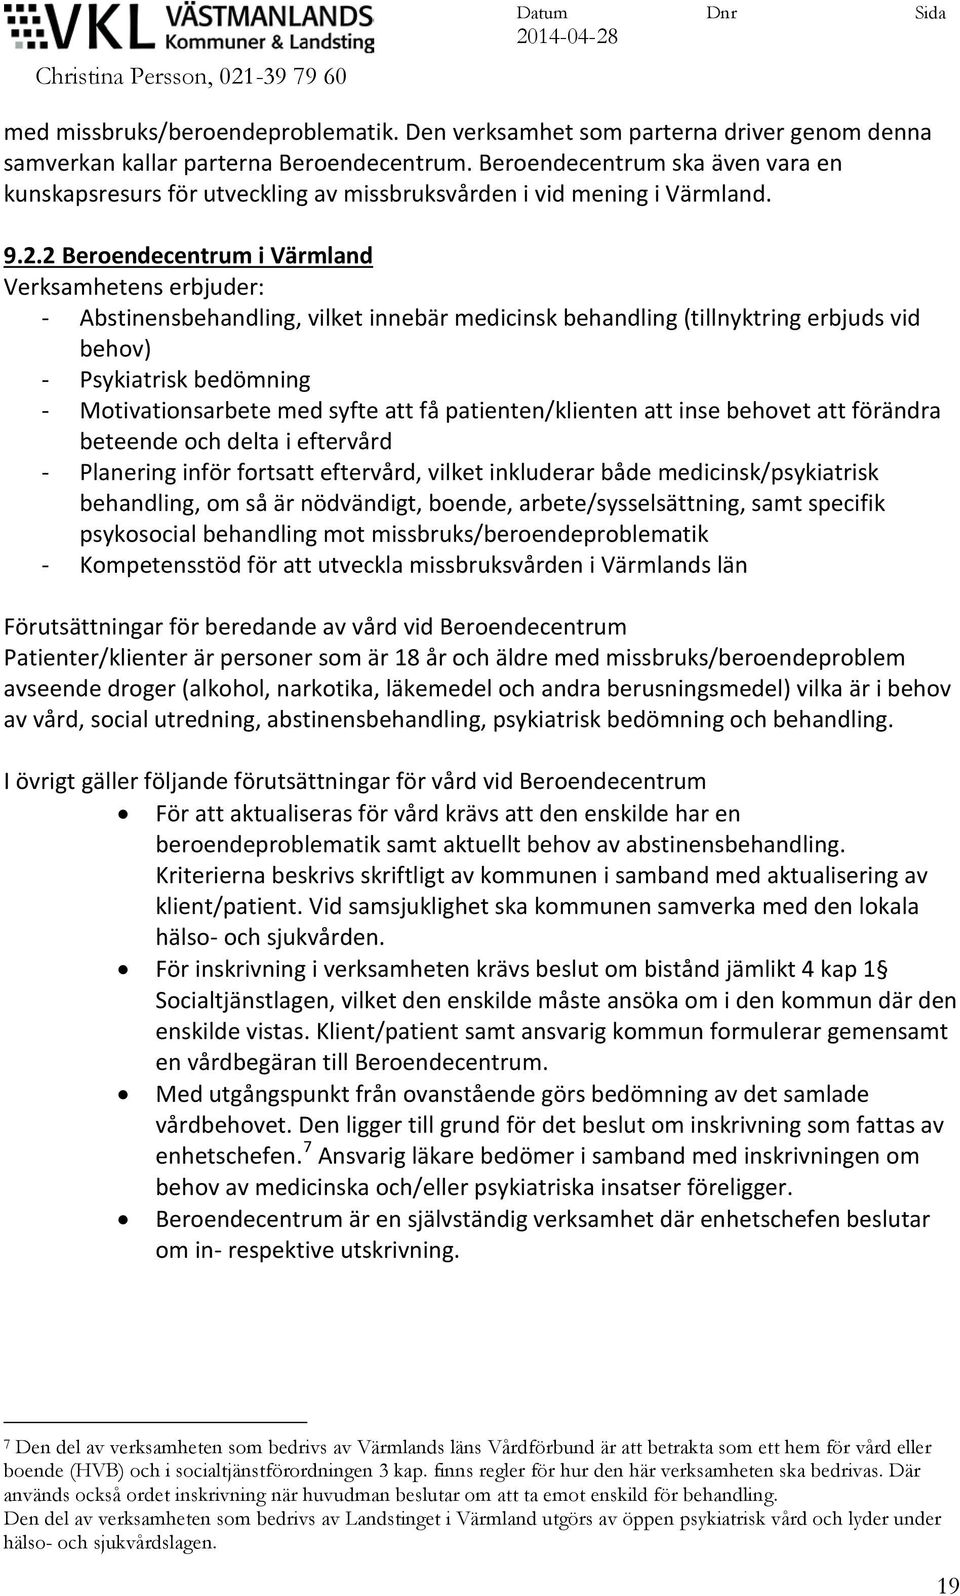 2 Beroendecentrum i Värmland Verksamhetens erbjuder: - Abstinensbehandling, vilket innebär medicinsk behandling (tillnyktring erbjuds vid behov) - Psykiatrisk bedömning - Motivationsarbete med syfte